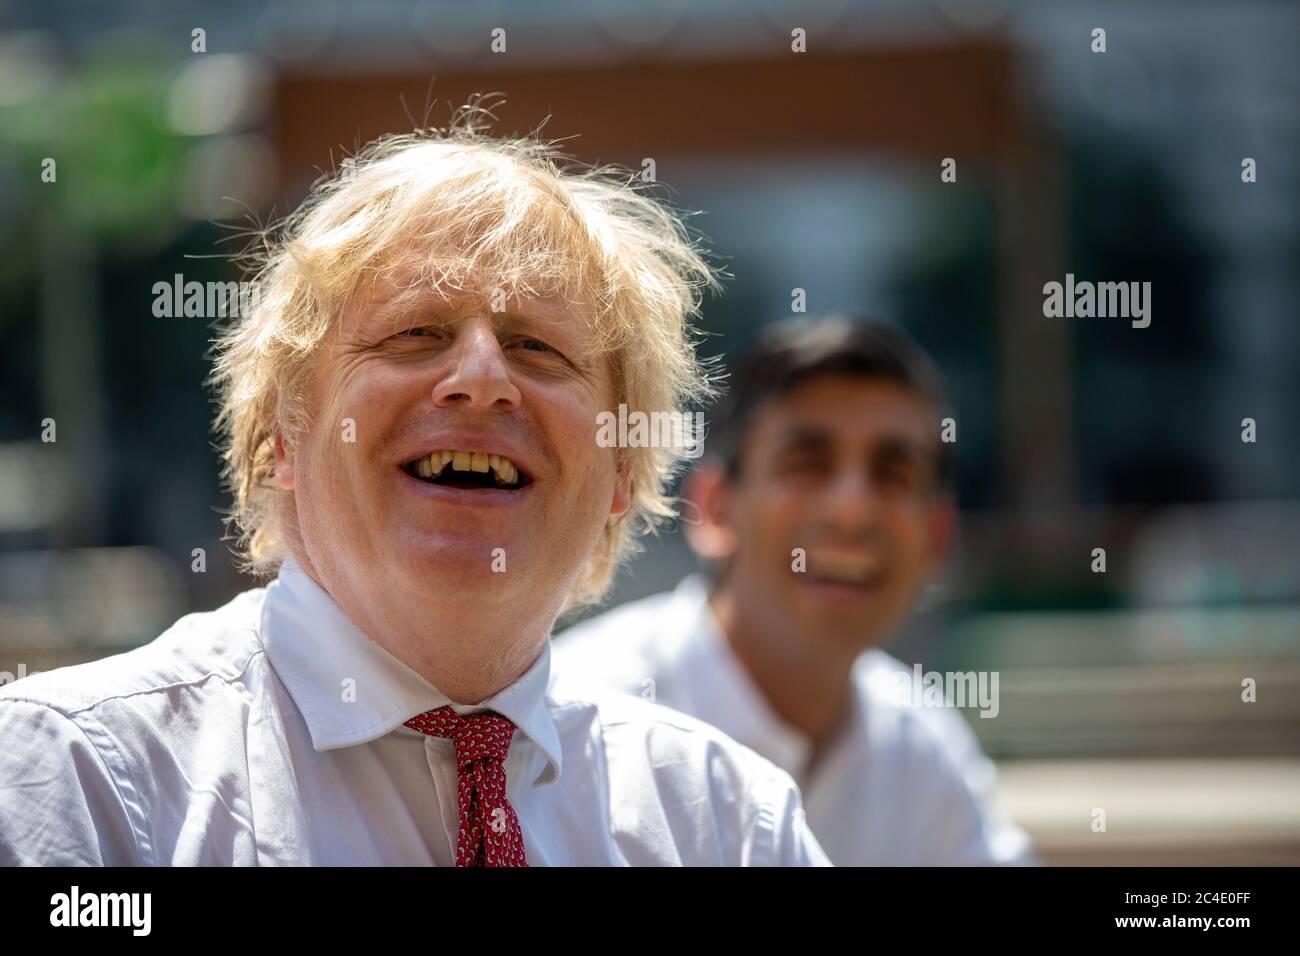 Le Premier ministre Boris Johnson lors d'une visite au restaurant Pizza Pilgrims dans l'est de Londres pour voir comment ils sont prêts à rouvrir leur entreprise et à s'adapter pour suivre les directives COVID-Secure, alors que d'autres restrictions de confinement du coronavirus sont levées en Angleterre. Banque D'Images